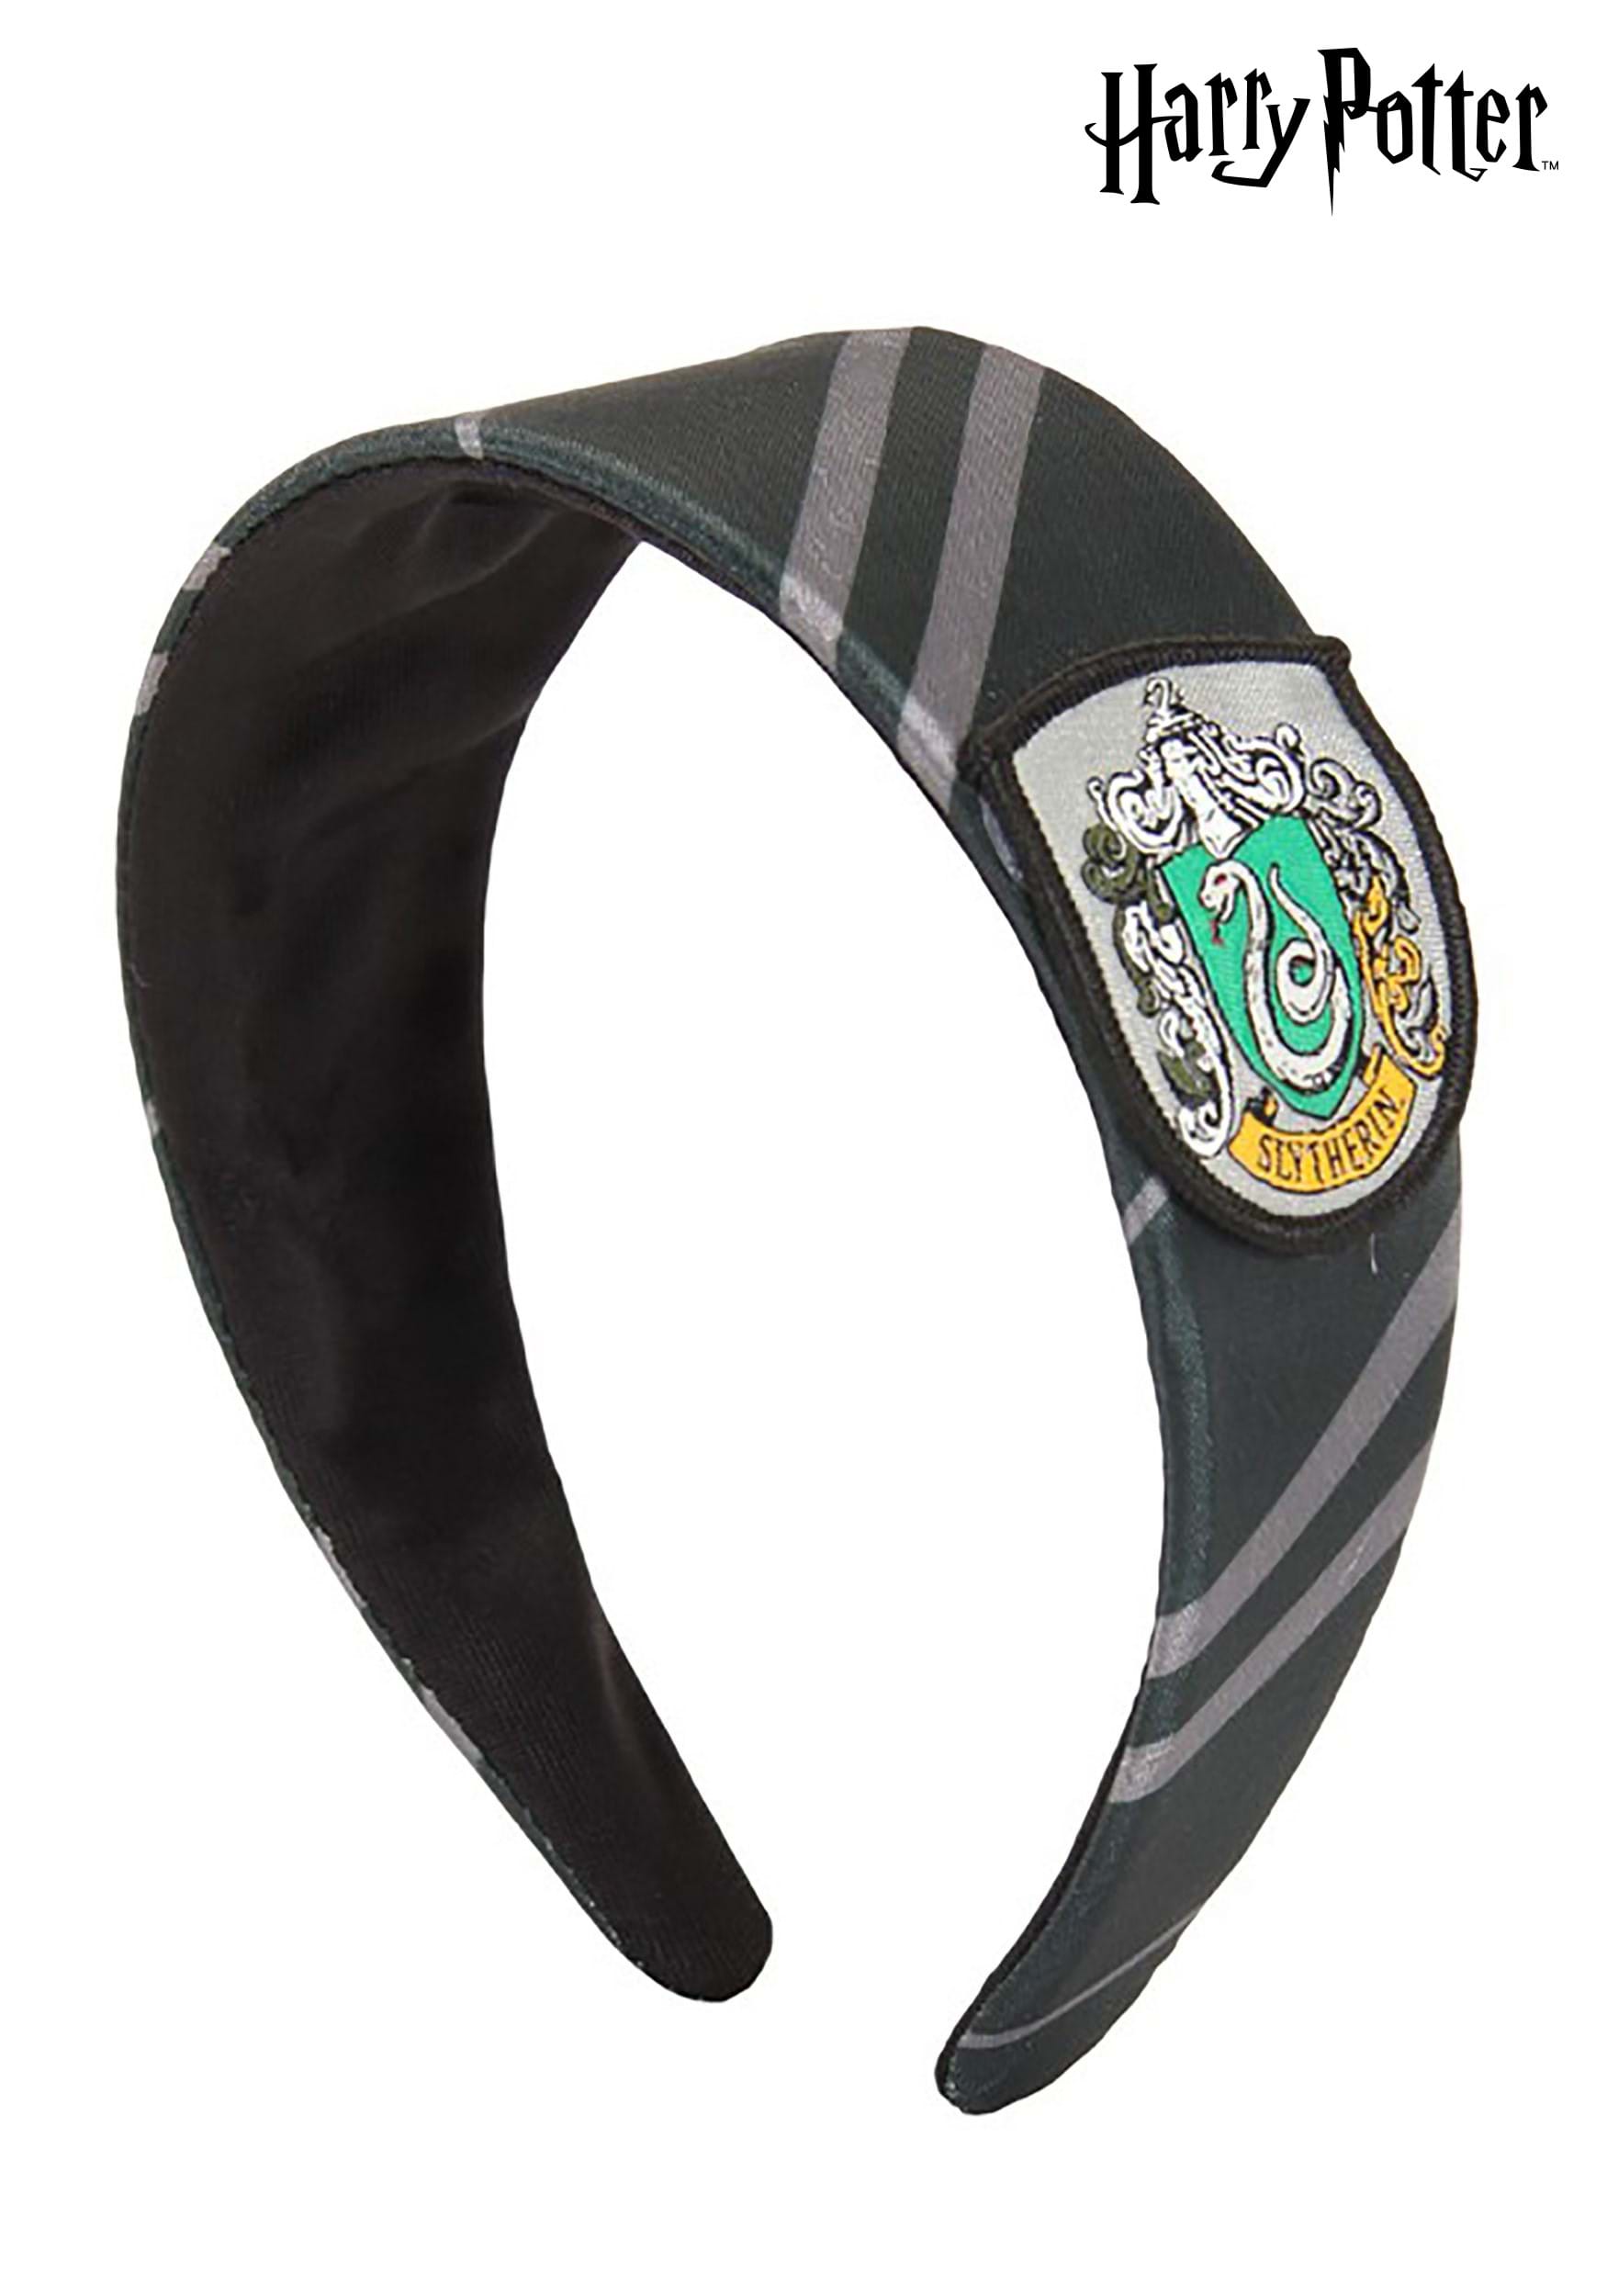 Slytherin Headband from Harry Potter